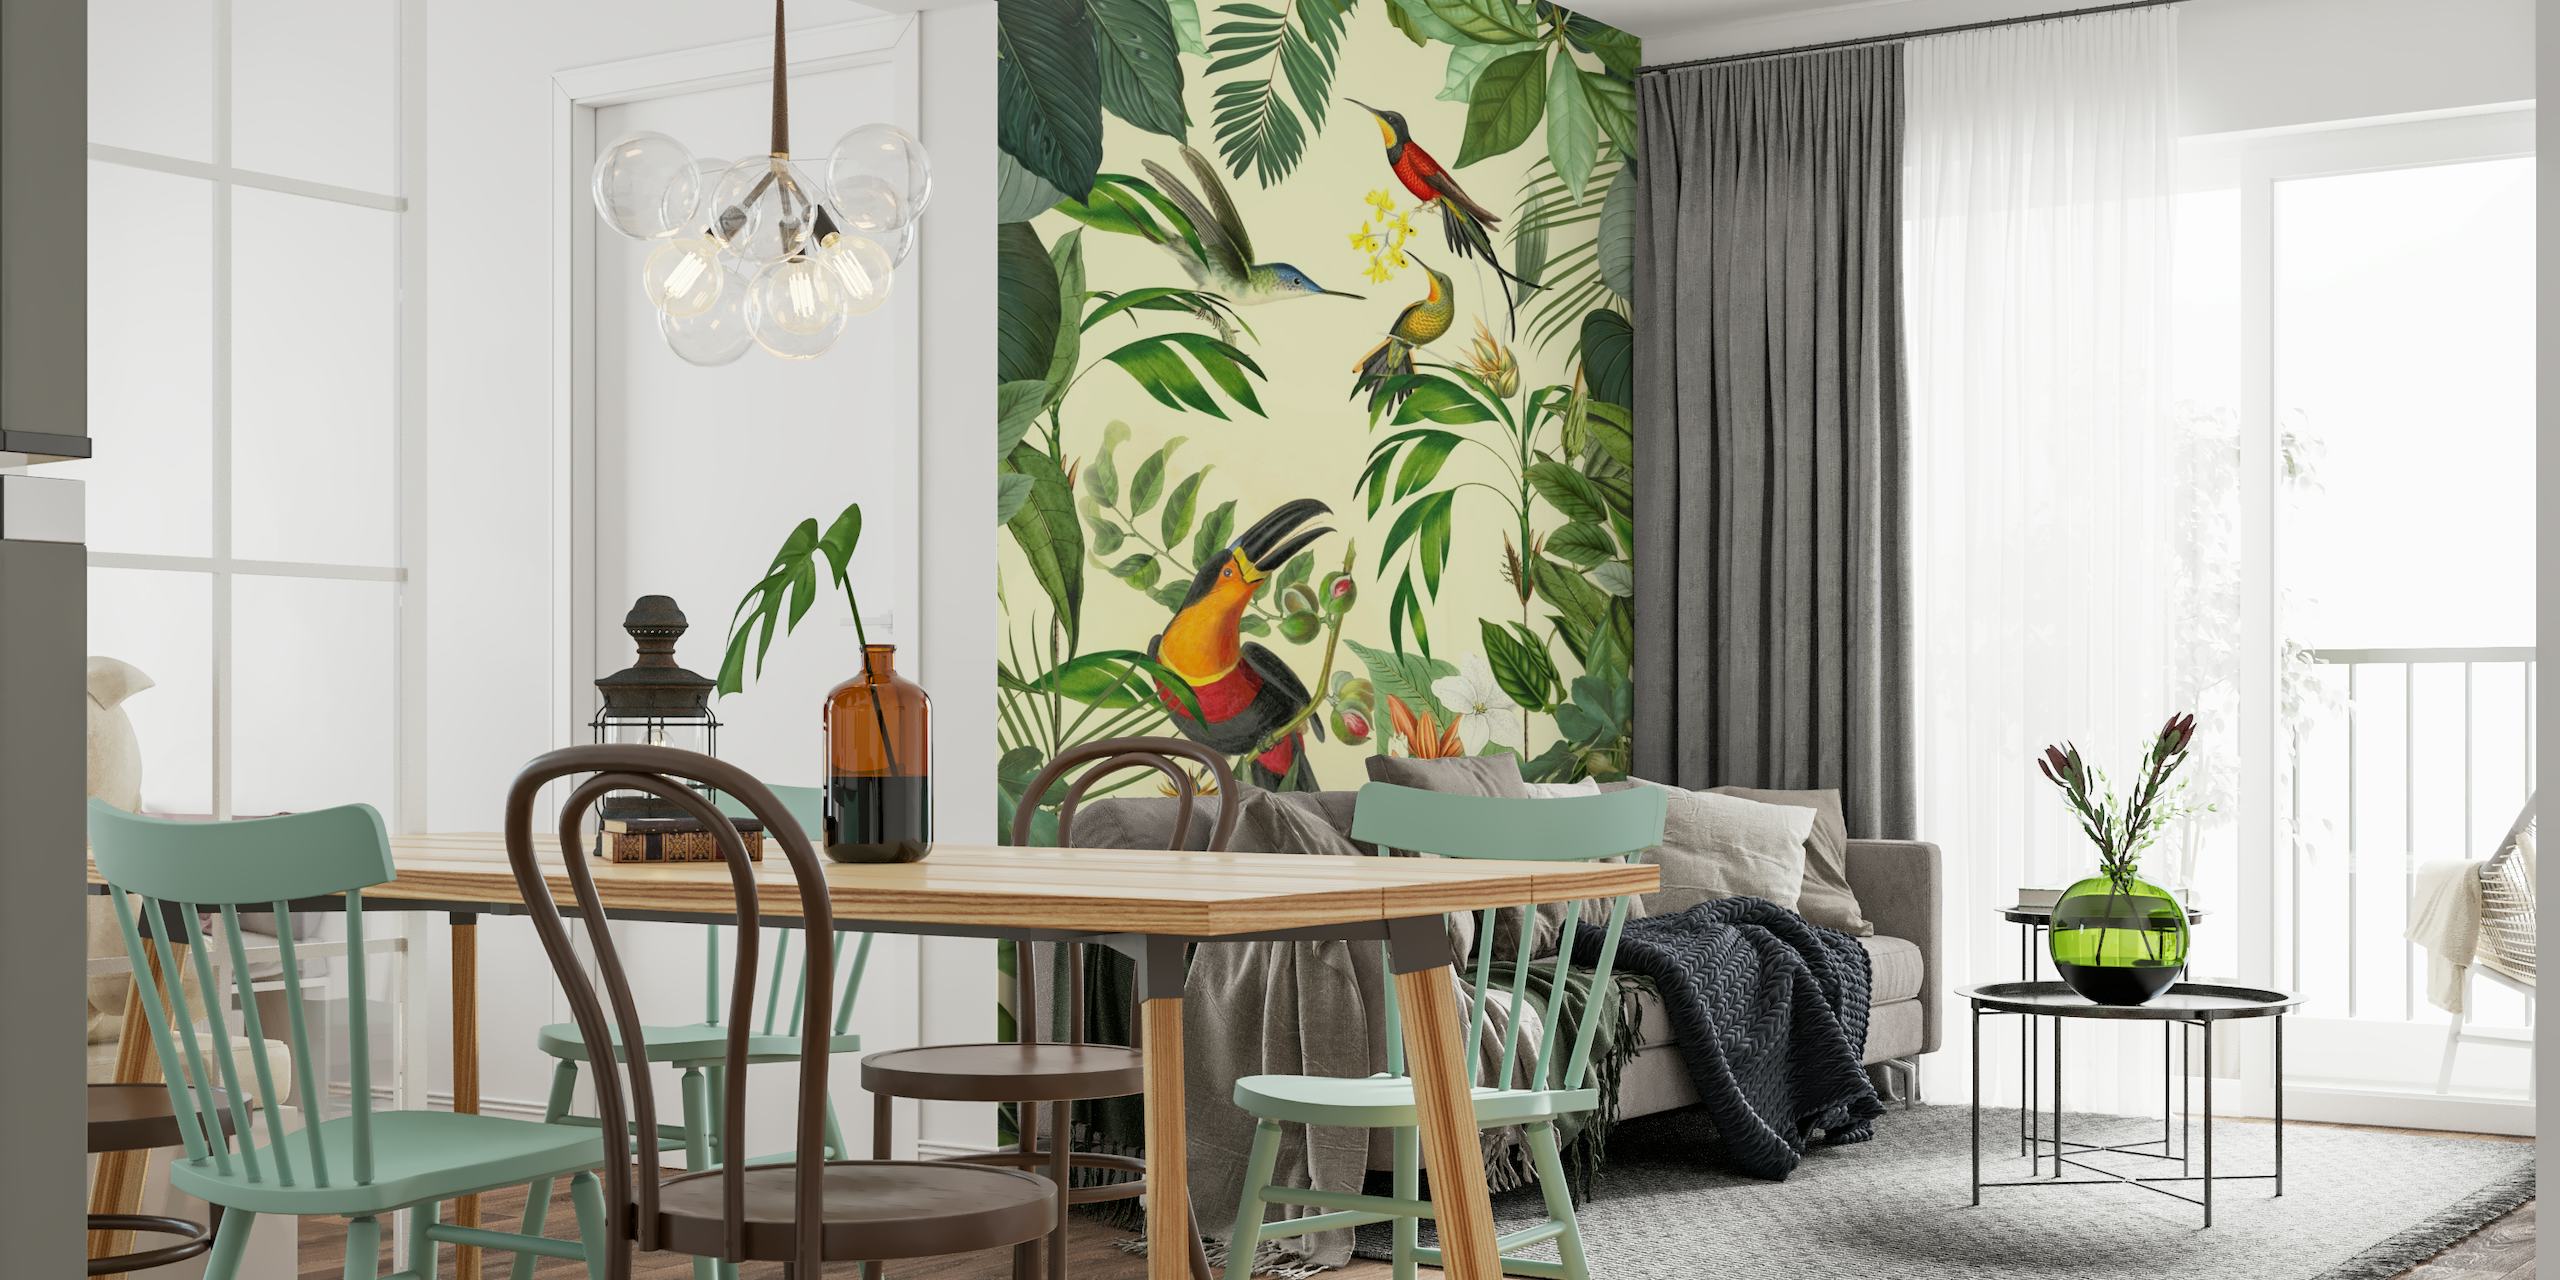 Papier peint mural de toucans tropicaux et de colibris affichant une faune vibrante et une verdure luxuriante